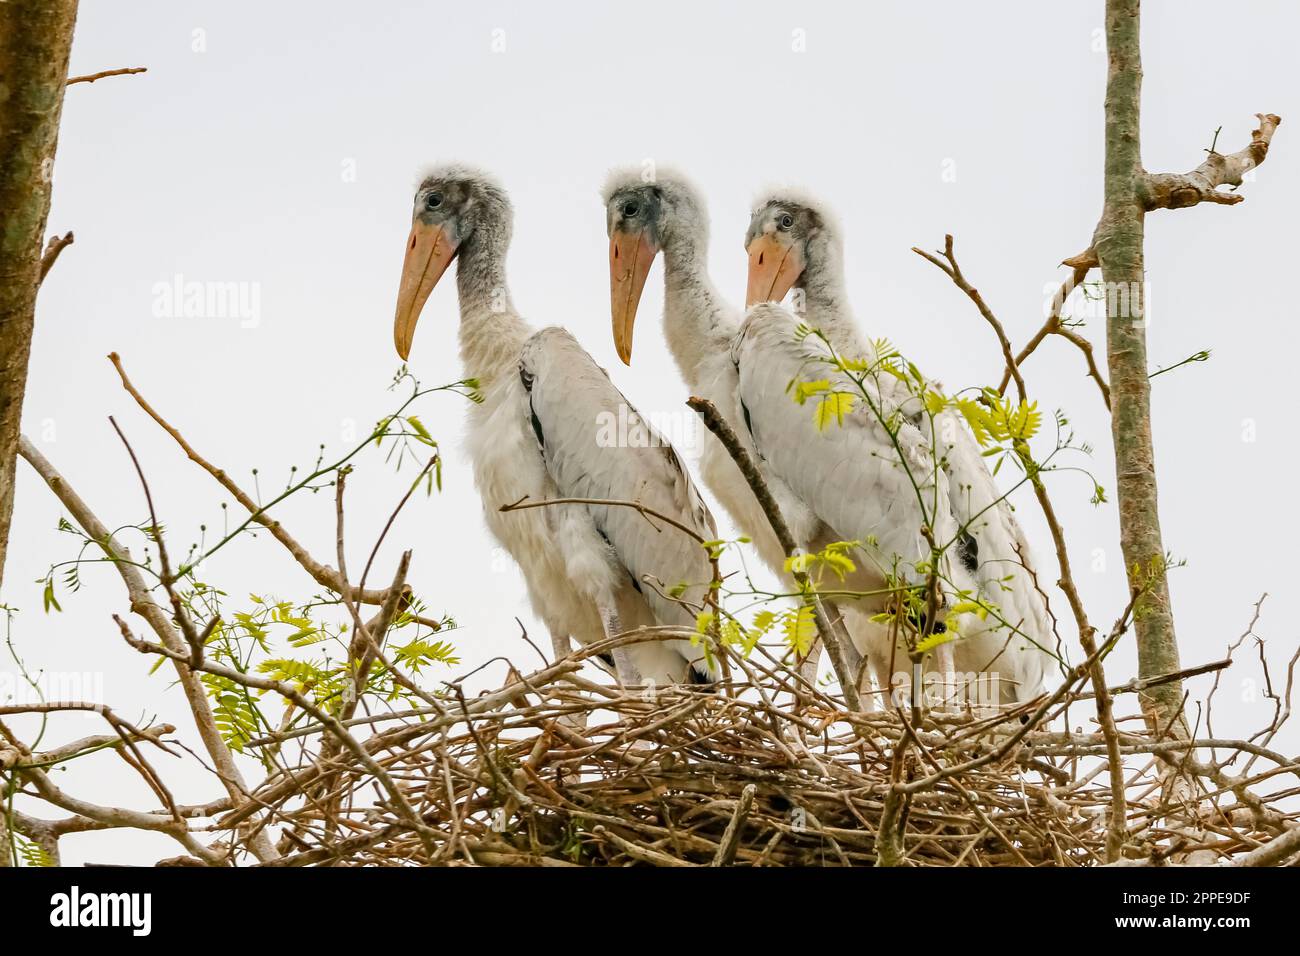 Drei junge Waldstorche stehen in ihrem Nest auf einem Baum vor hellem Hintergrund und schauen in dieselbe Richtung, Pantanal Wetlands, Mato Grosso, Brasilien Stockfoto